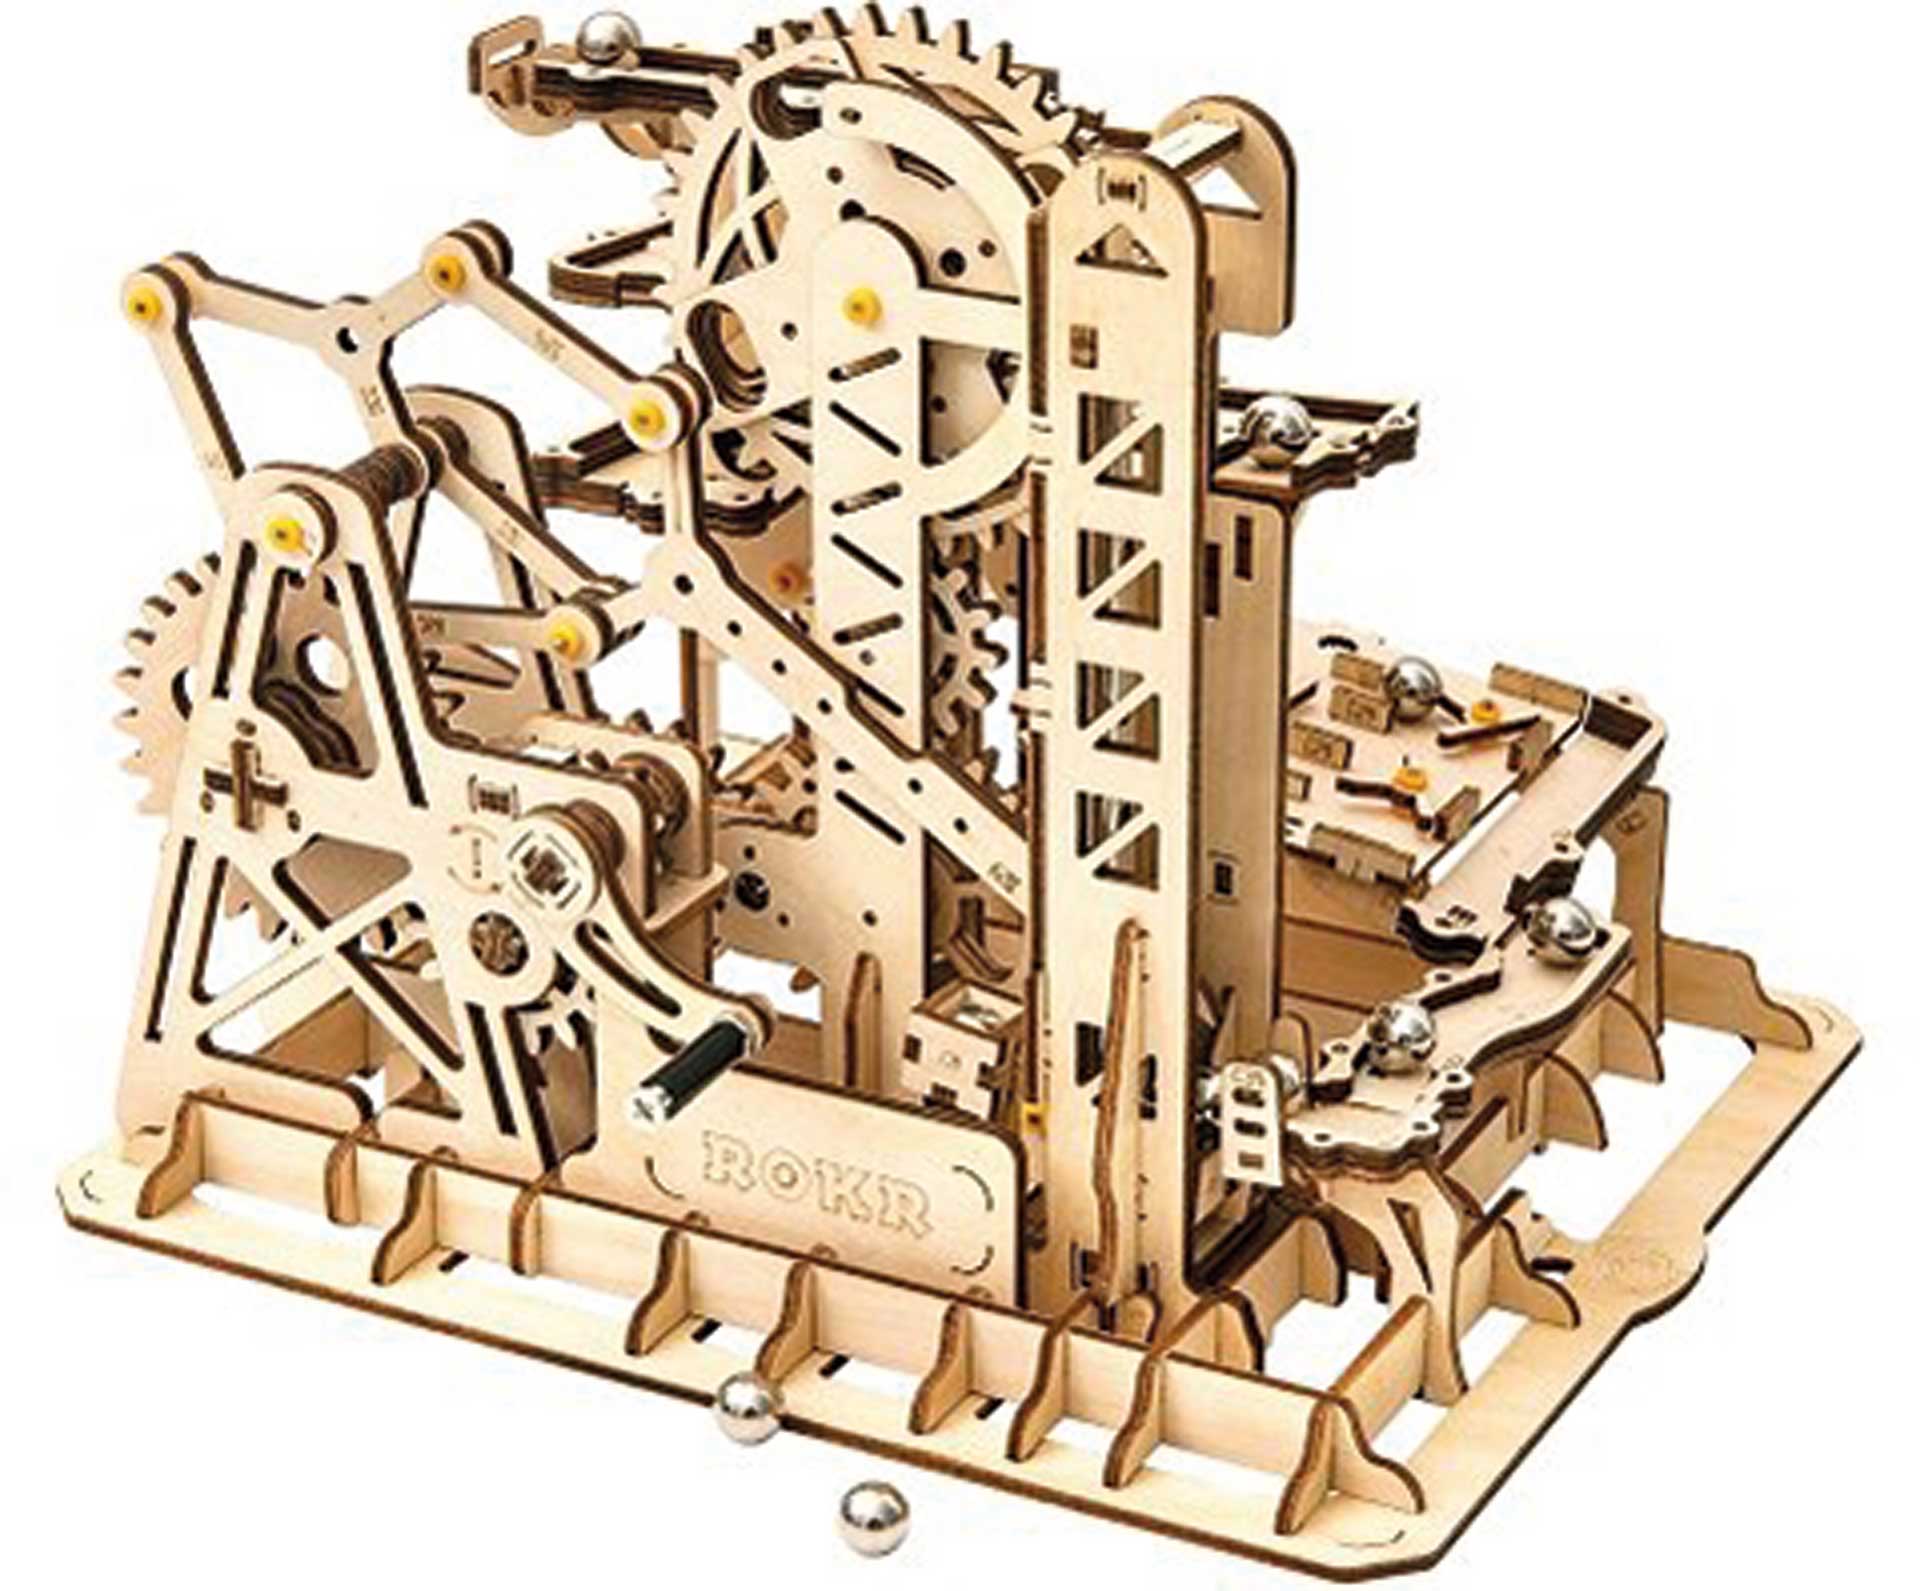 Pichler Piste de billes Tower Coaster (Lasercut) Kit de construction en bois)